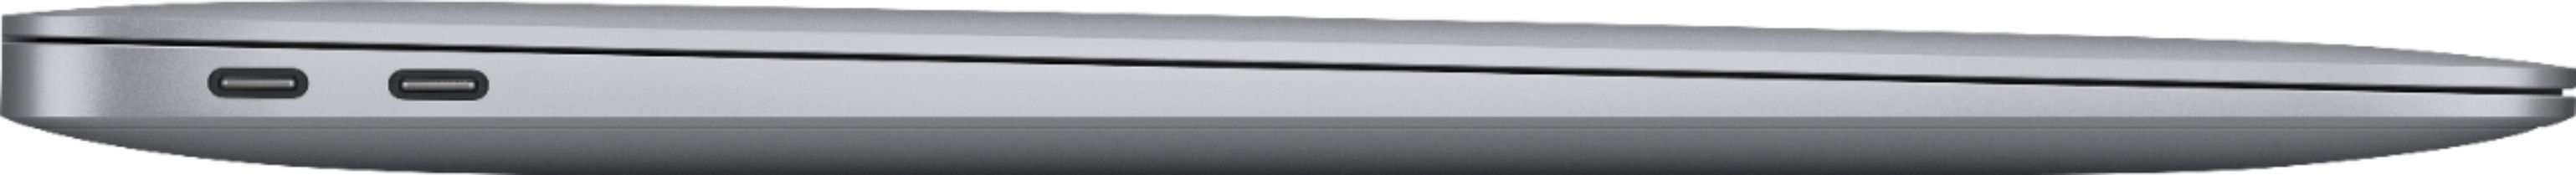 Bild von MacBook Air M1 2020 13,3" 8 GB RAM 256 GB SSD 7-Core GPU space grau